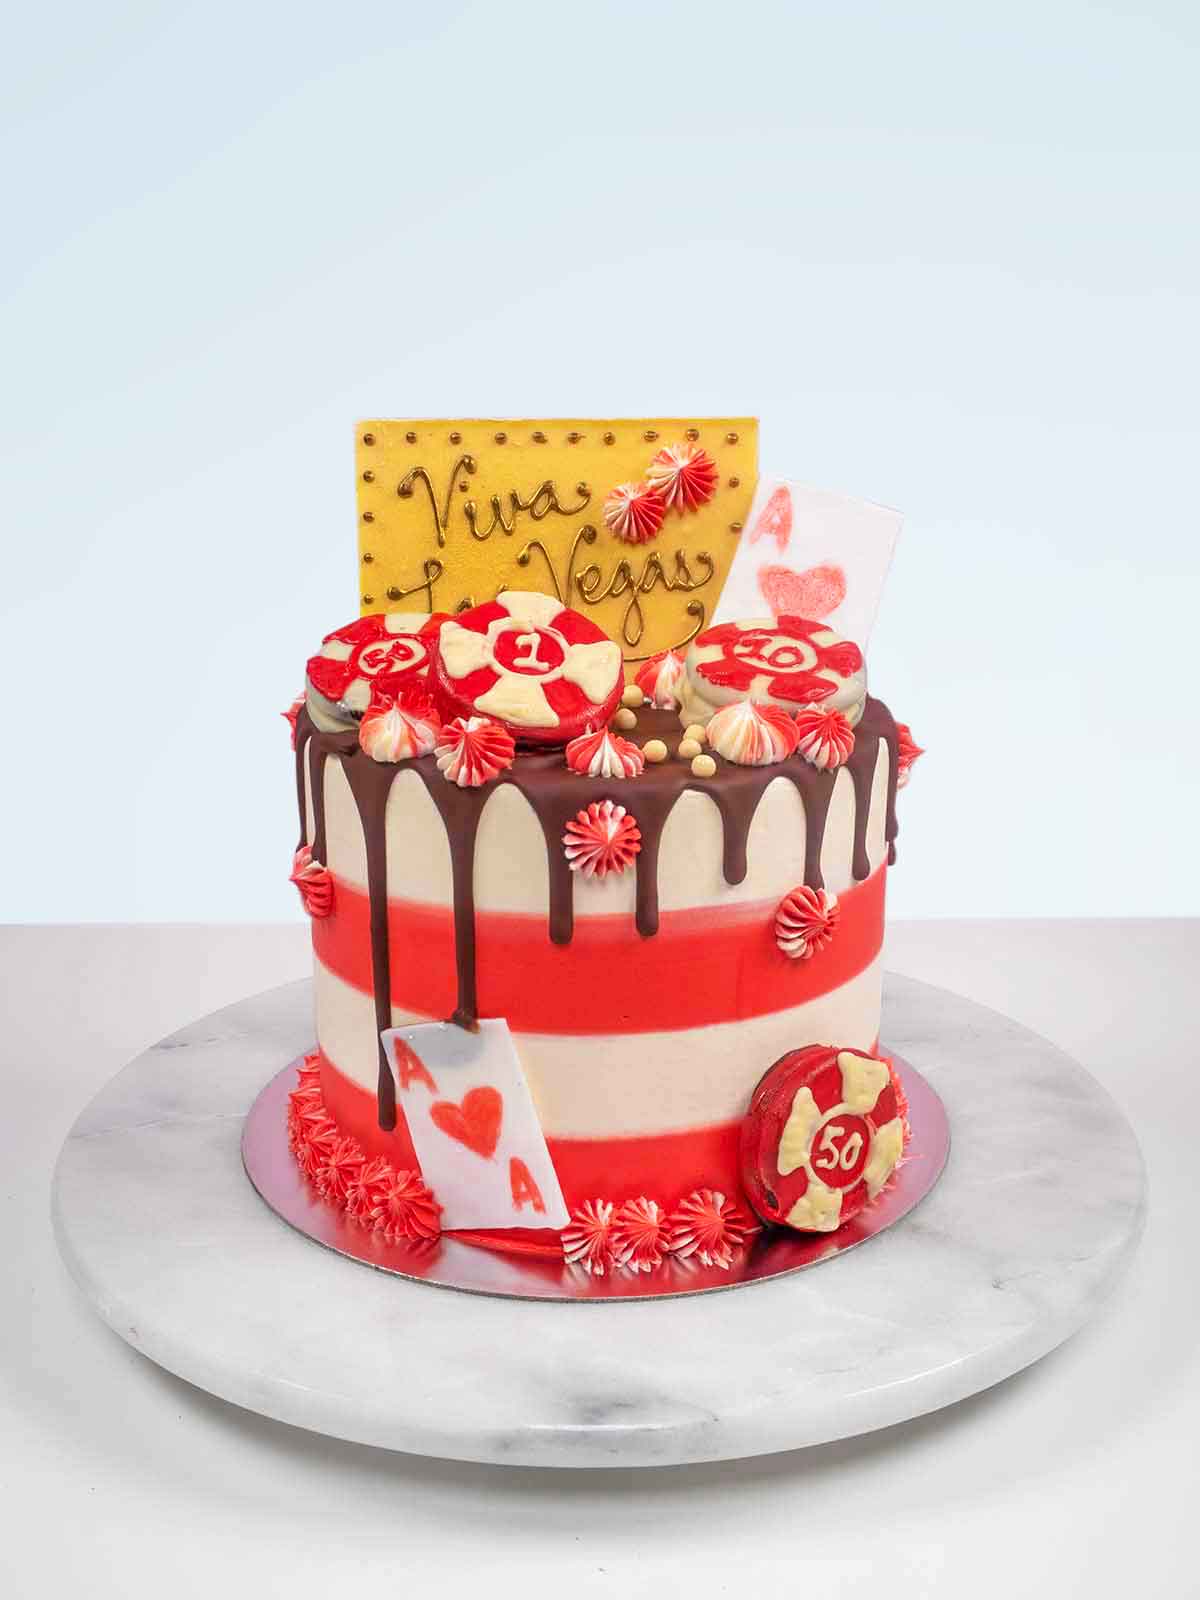 70th Birthday Cakes - Elegant Designs for Men & Women